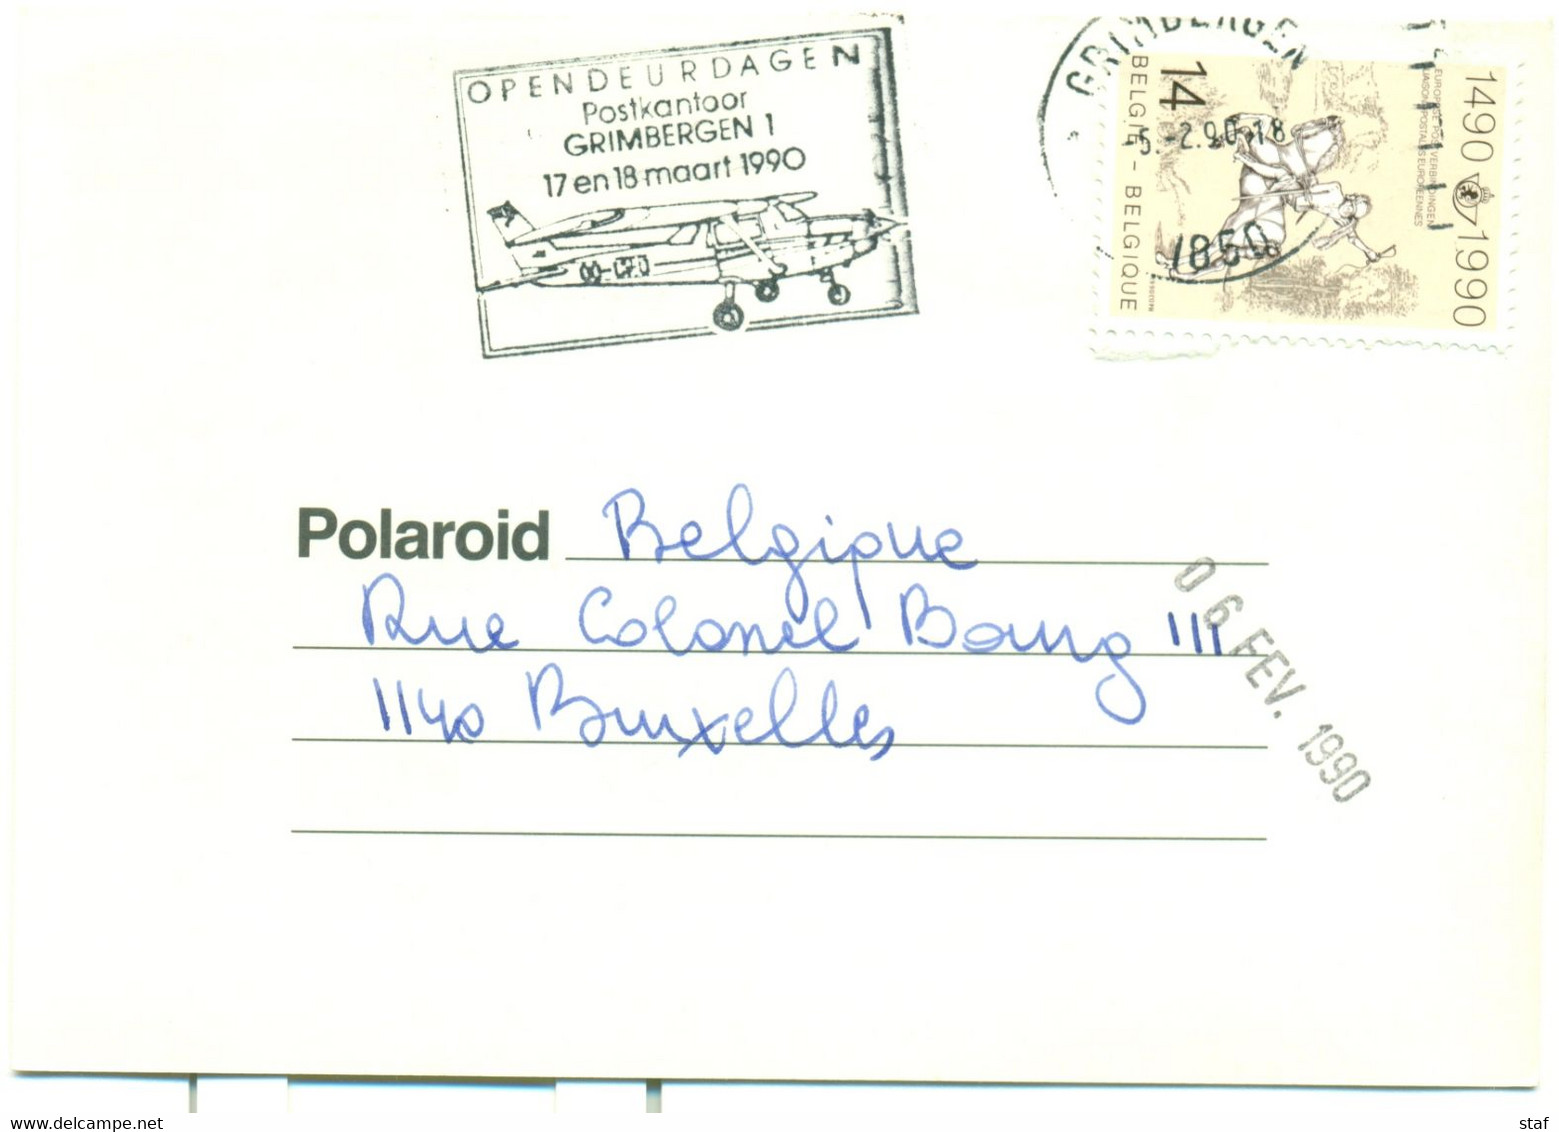 Opendeurdagen Postkantoor Grimbergen 1  17 En 18 Maart 1990 - Targhette